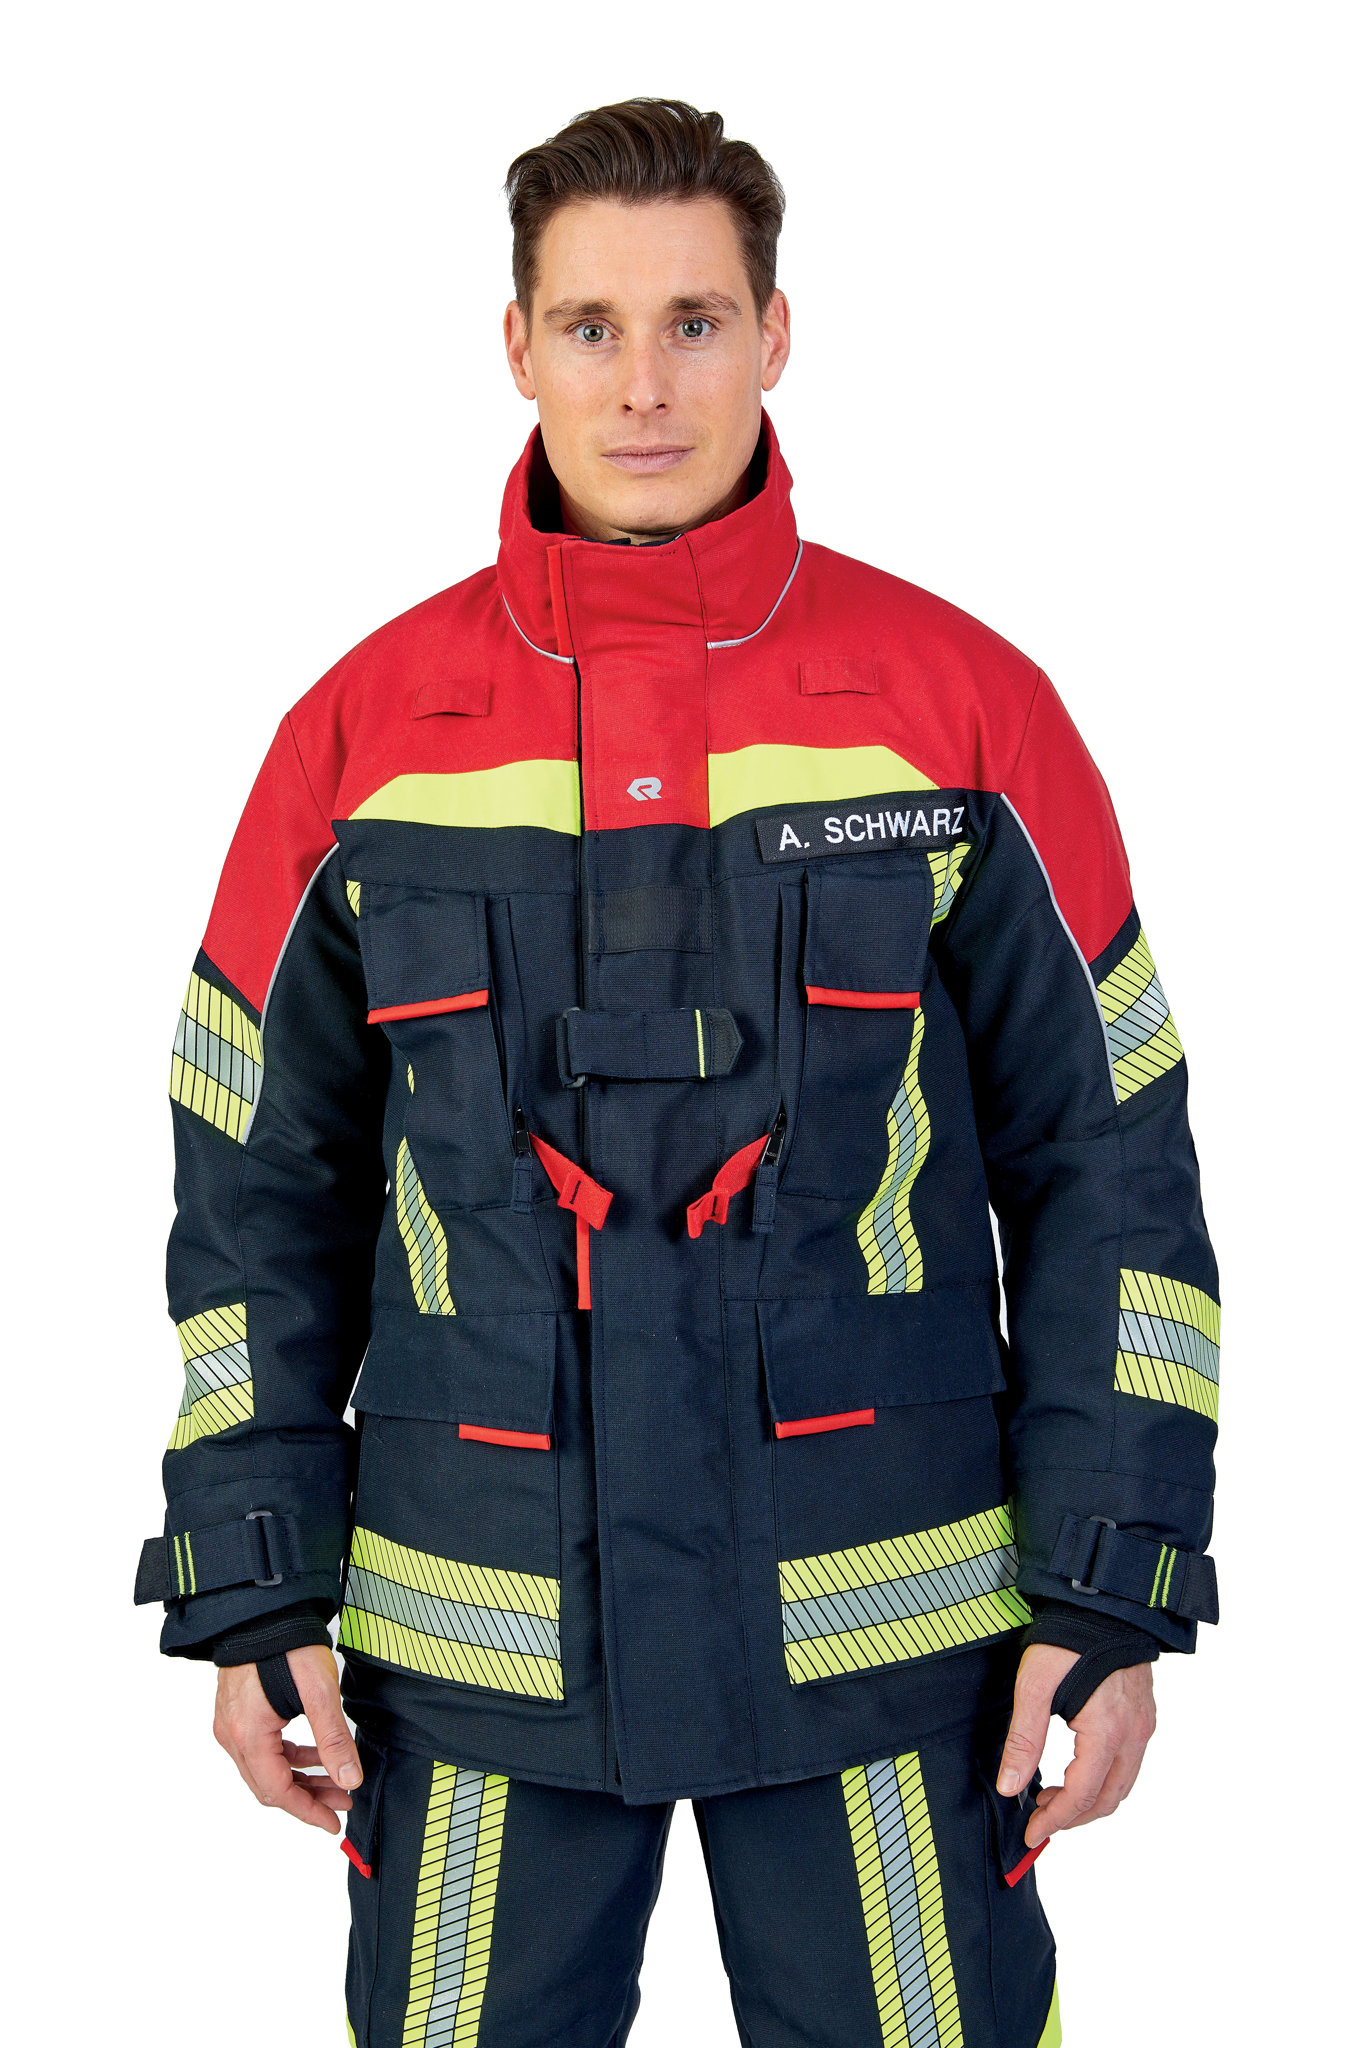 Bild von ROSENBAUER Feuerwehreinsatzjacke FIRE FLEX, NOMEX NXT, schwarzblau/rot, Gr. 60-62 B